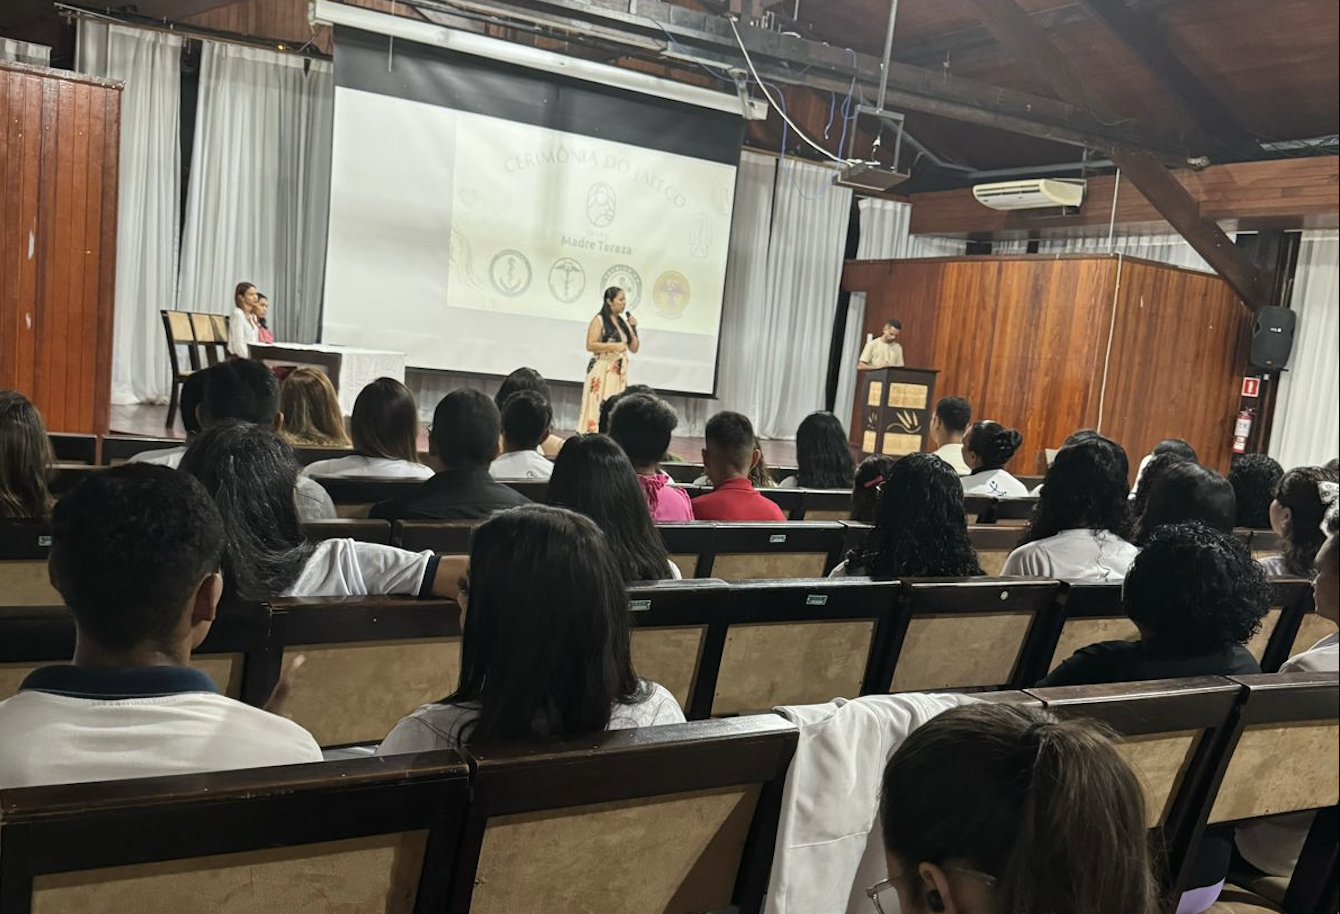 Grupo Madre Tereza Celebra Sonhos e Profissões na Cerimônia do Jaleco